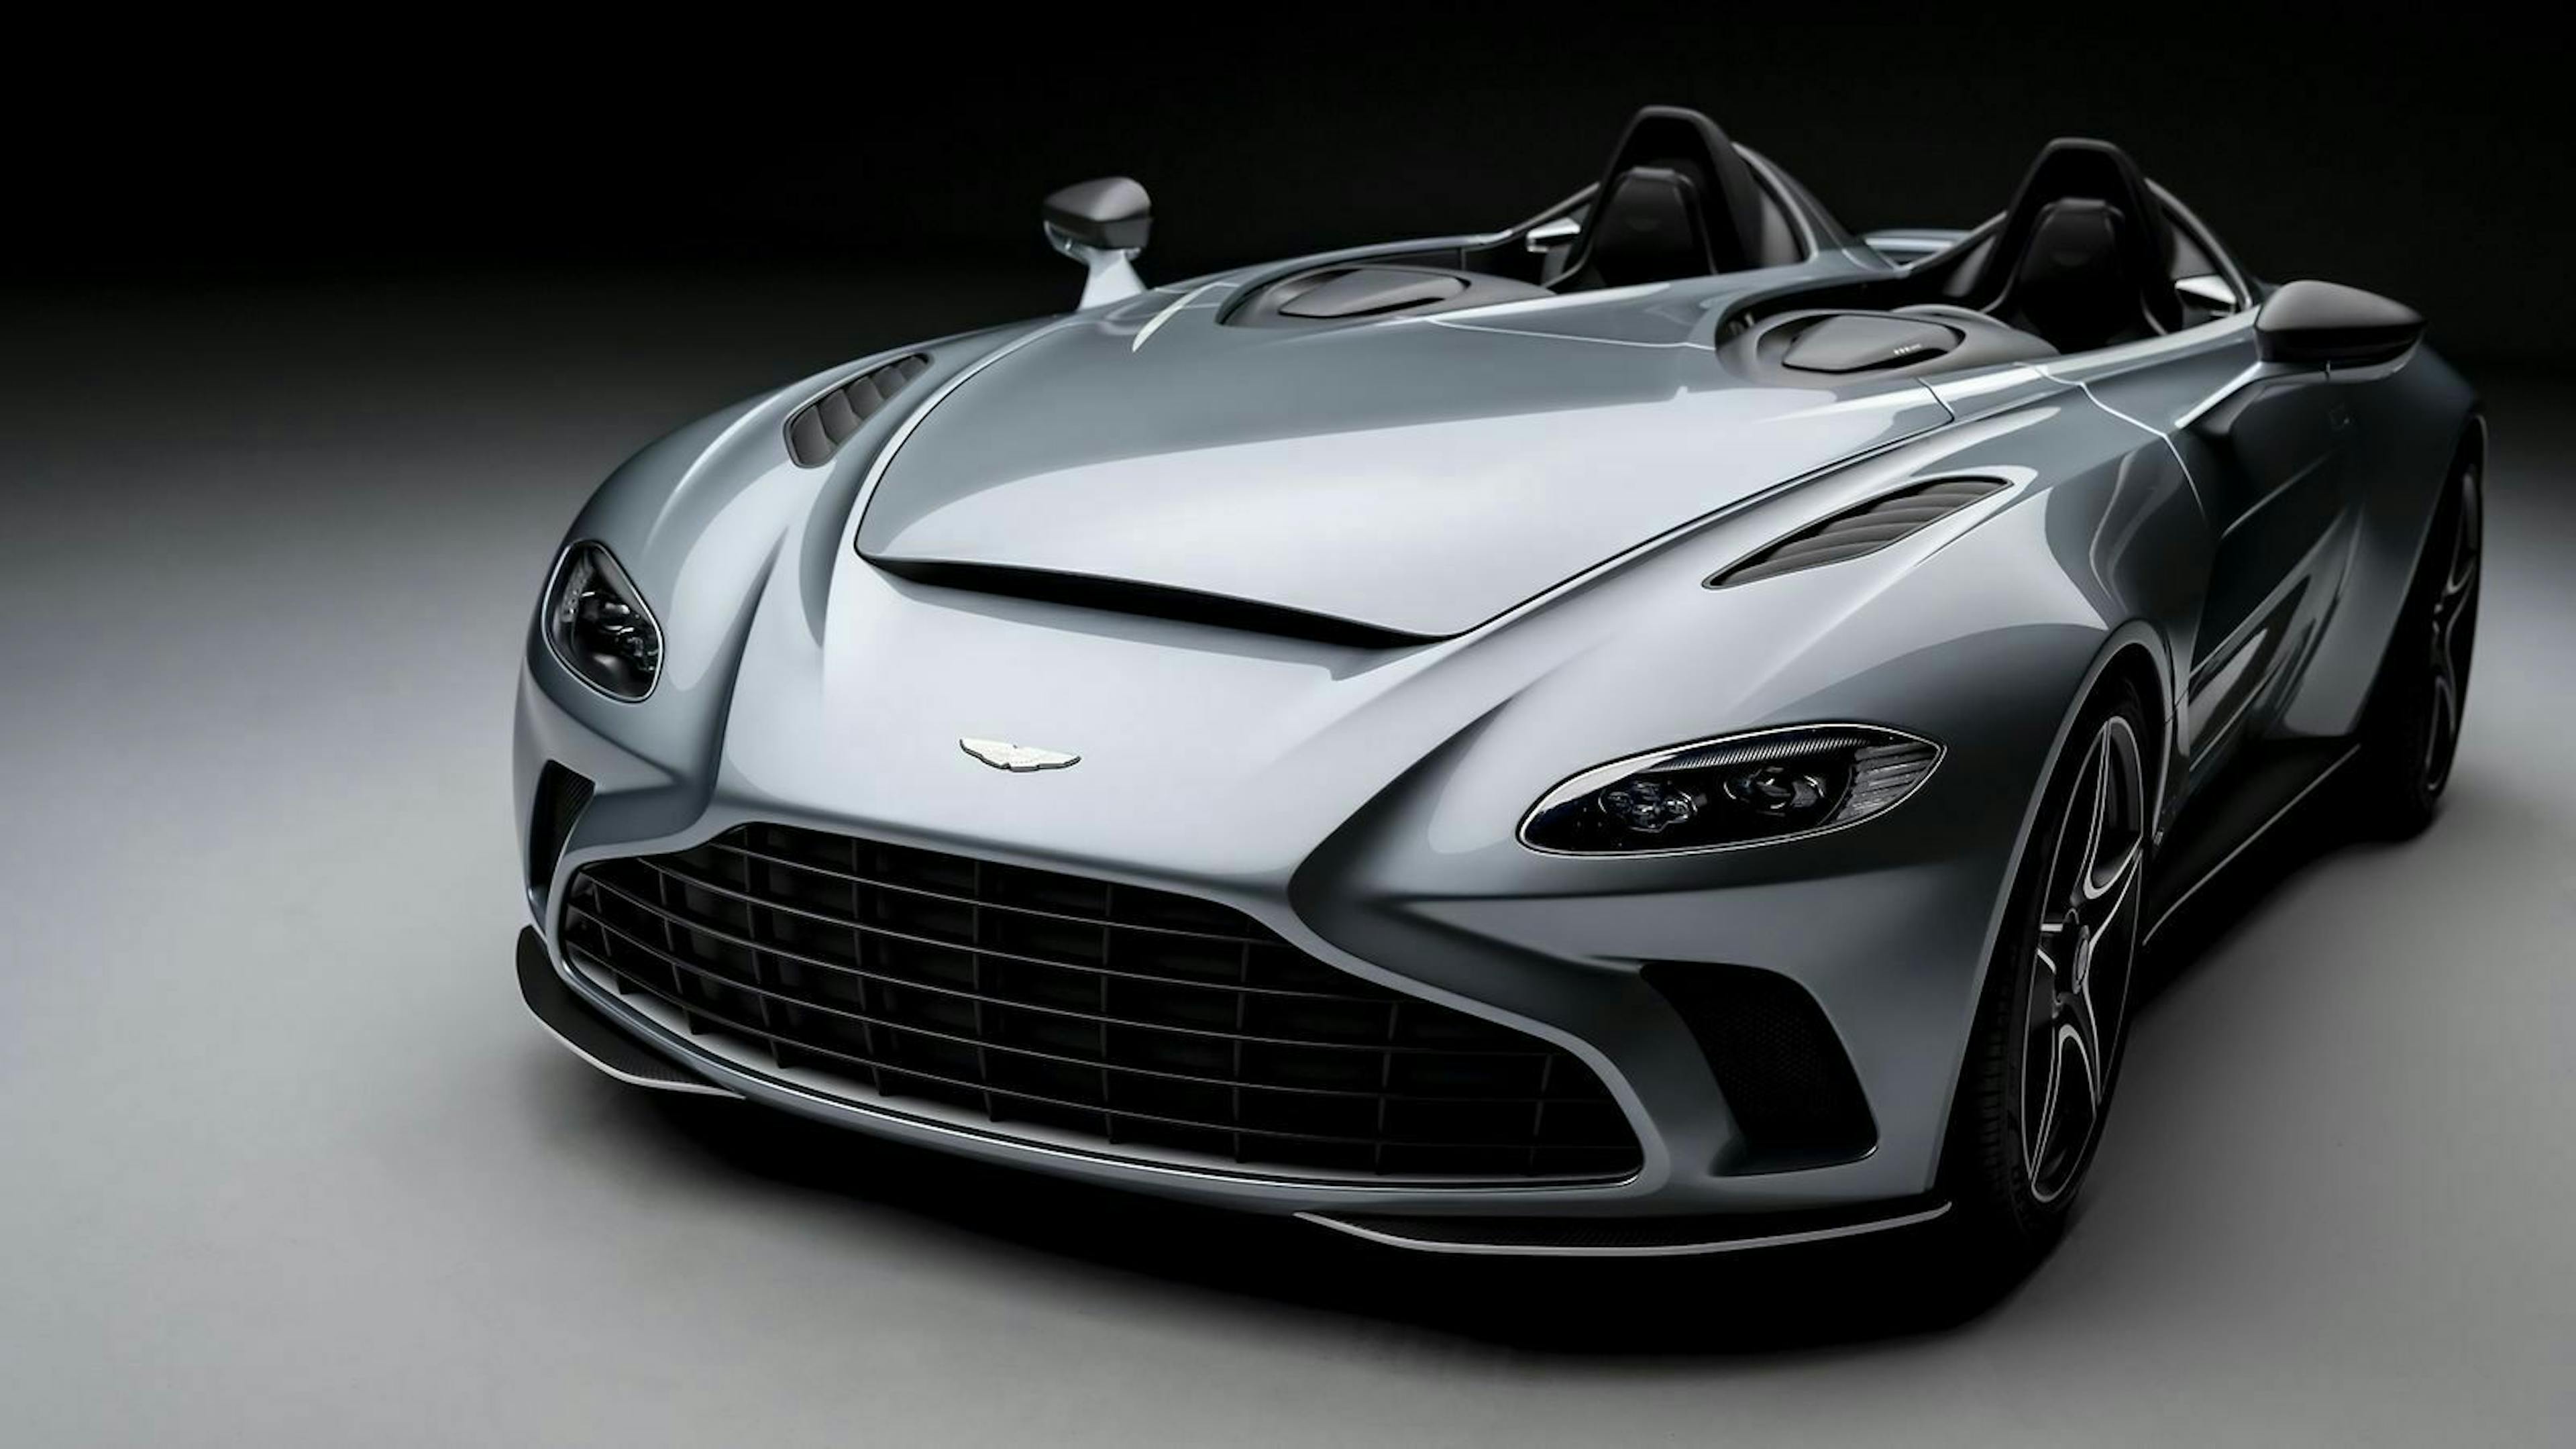 Zu sehen ist der Aston Martin V12 Speedster von vorn